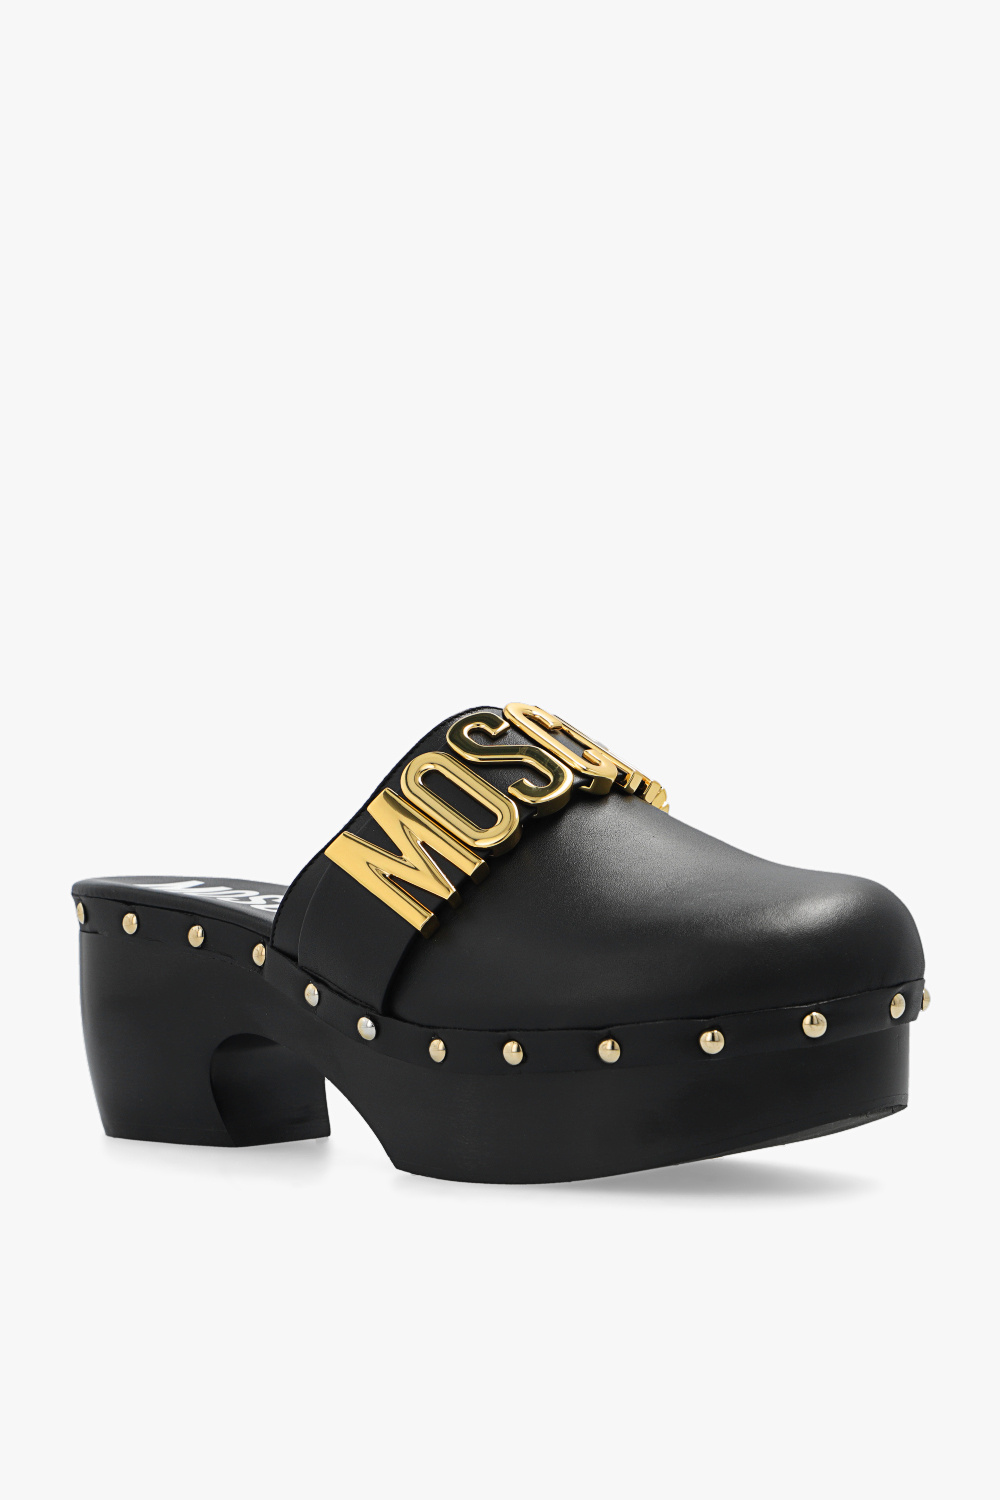 Moschino Originals Superstar J H04025 shoes